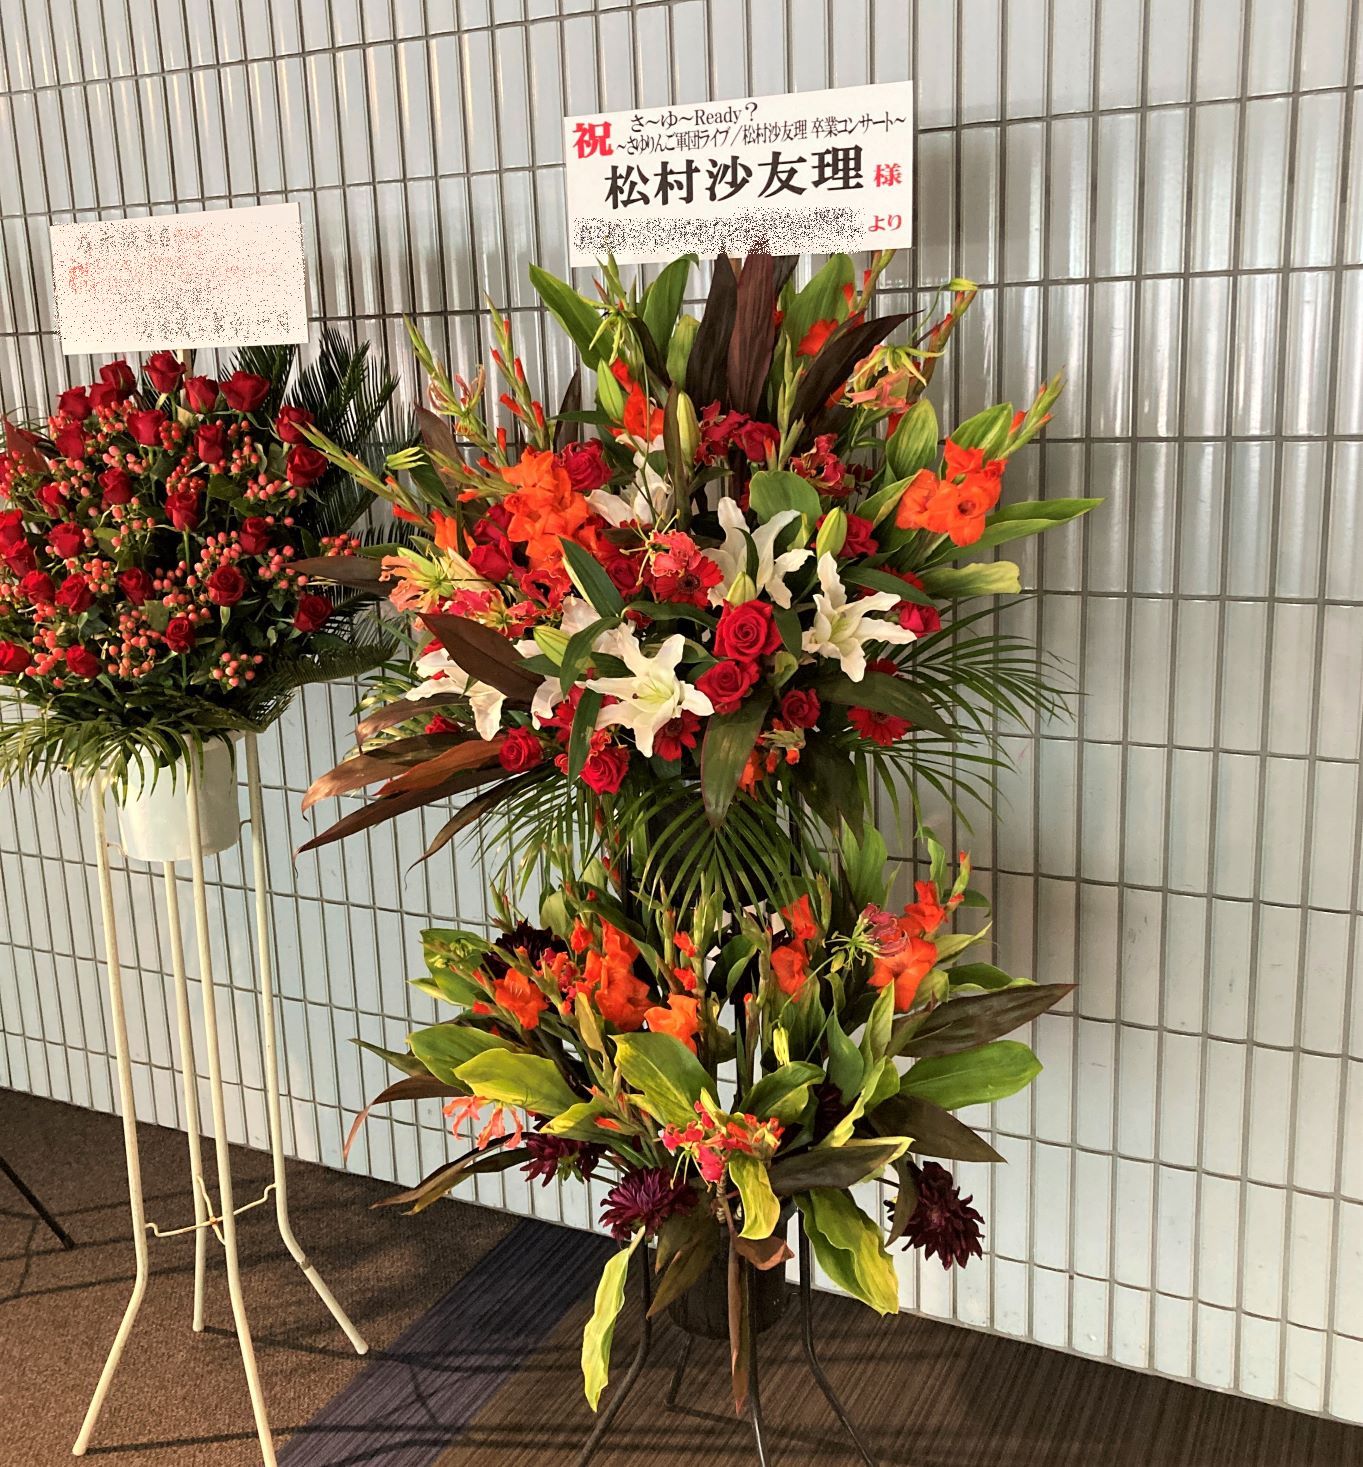 乃木坂46さんのライブへ祝花スタンド花(スタフラ)を配達しました。【横浜花屋の花束・スタンド花・胡蝶蘭・バルーン・アレンジメント配達事例922】